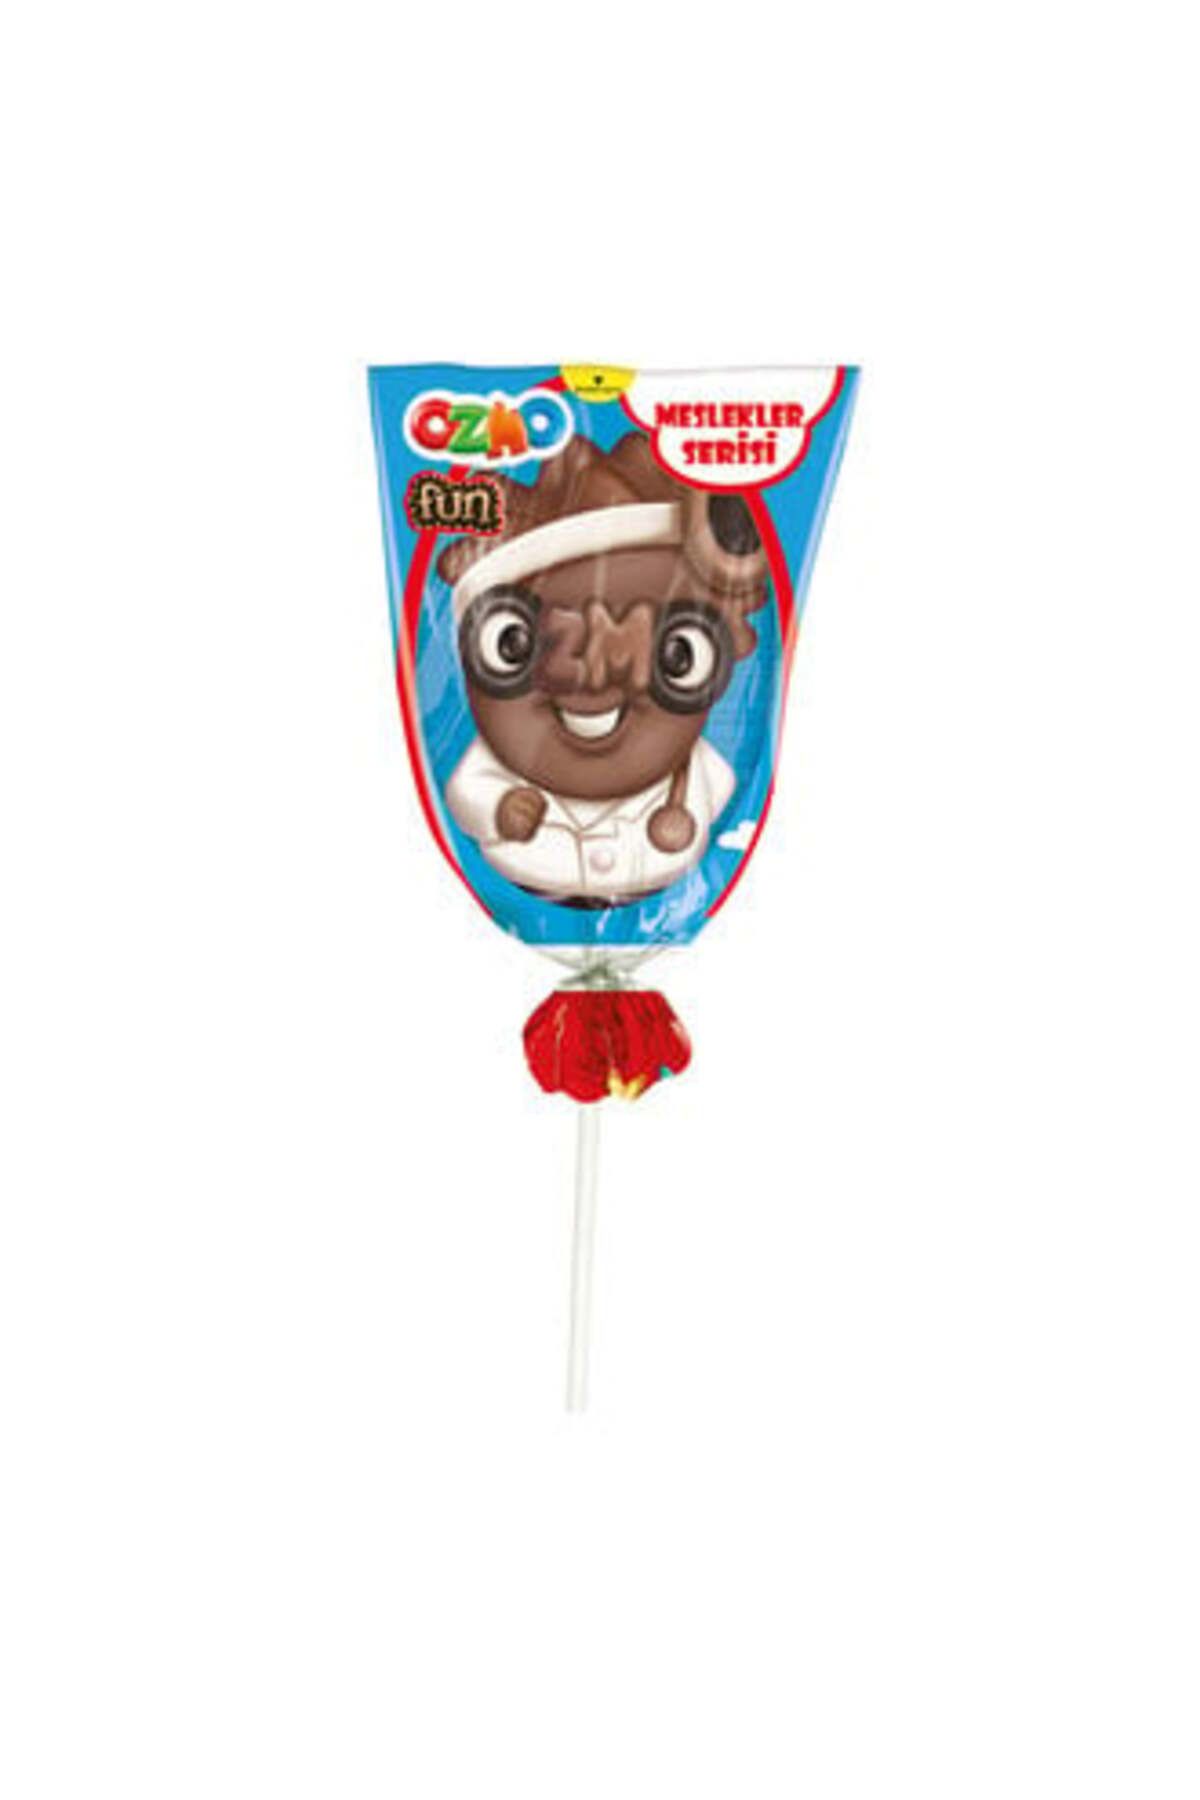 Ozmo Fun Meslekler Serisi Figürlü Çikolatalar 23 G ( 5 ADET )